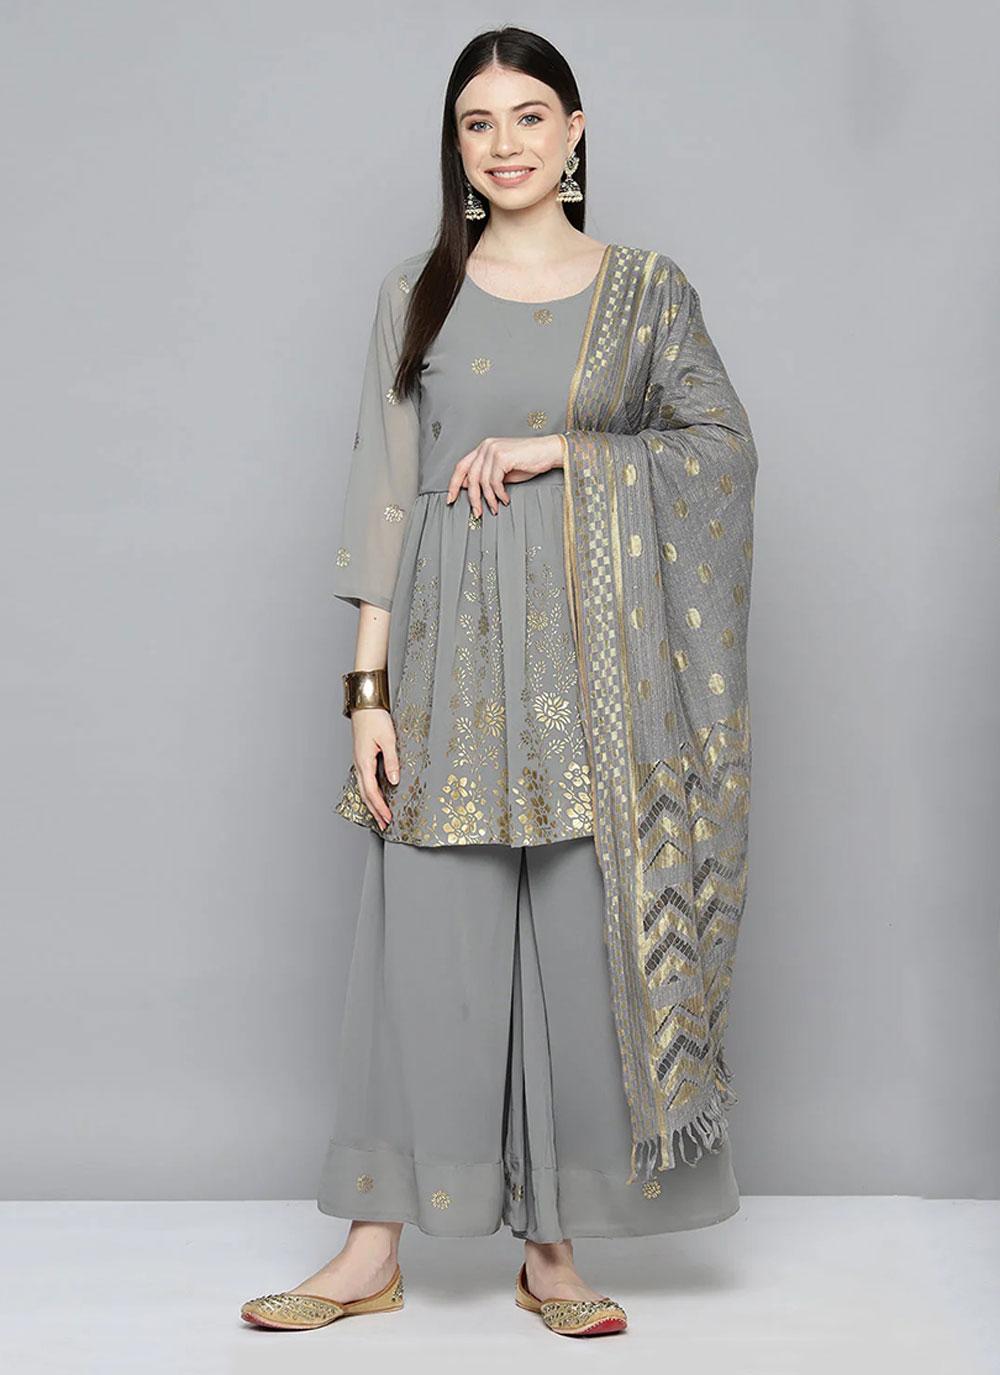 Georgette Trendy Salwar Kameez in Grey Enhanced with Floral Print